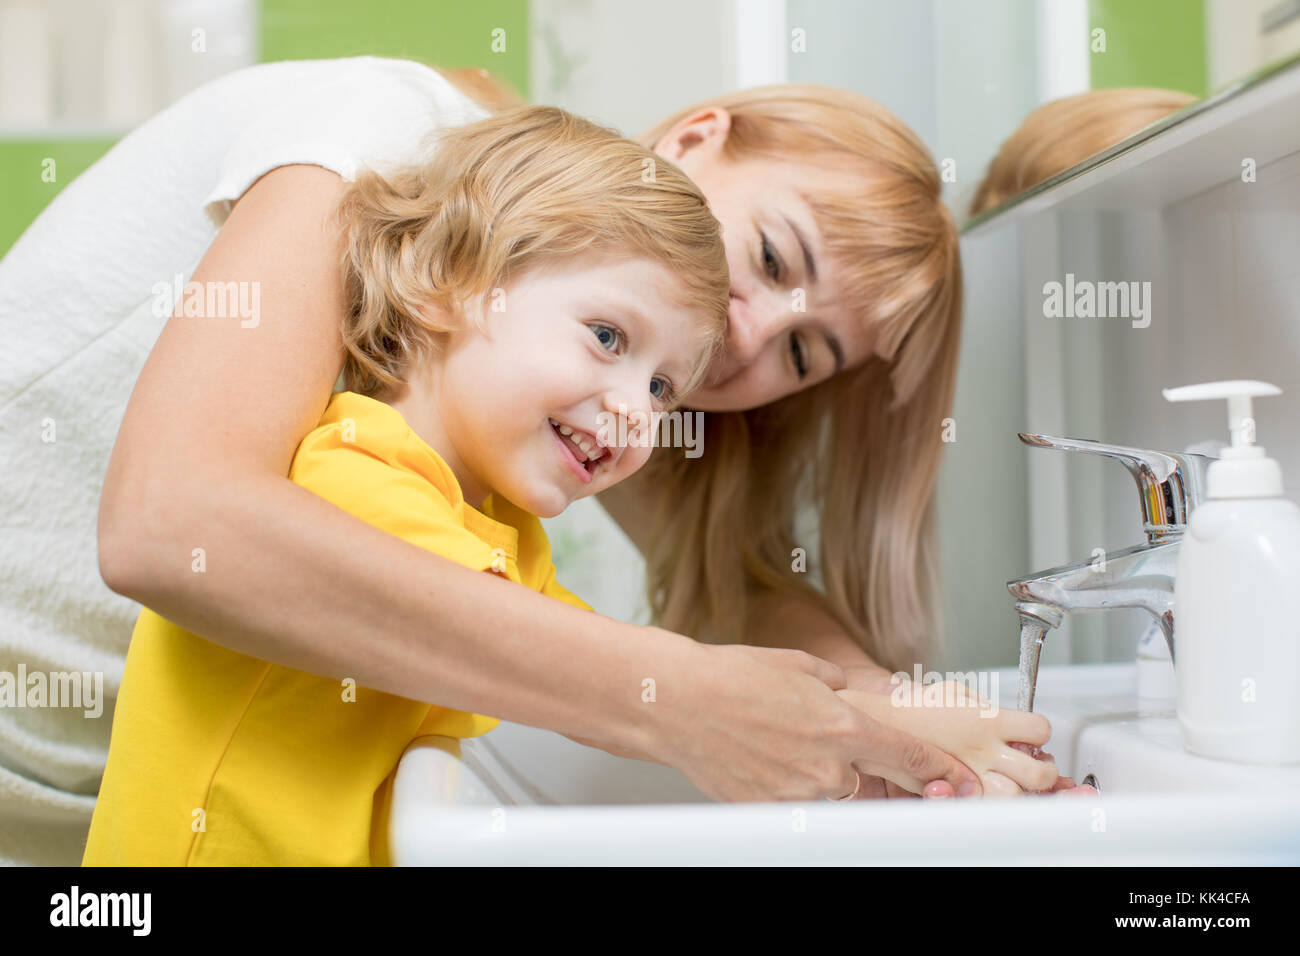 La madre y el niño, hijo de lavarse las manos en el baño. cuidado y preocupación por los niños. Foto de stock